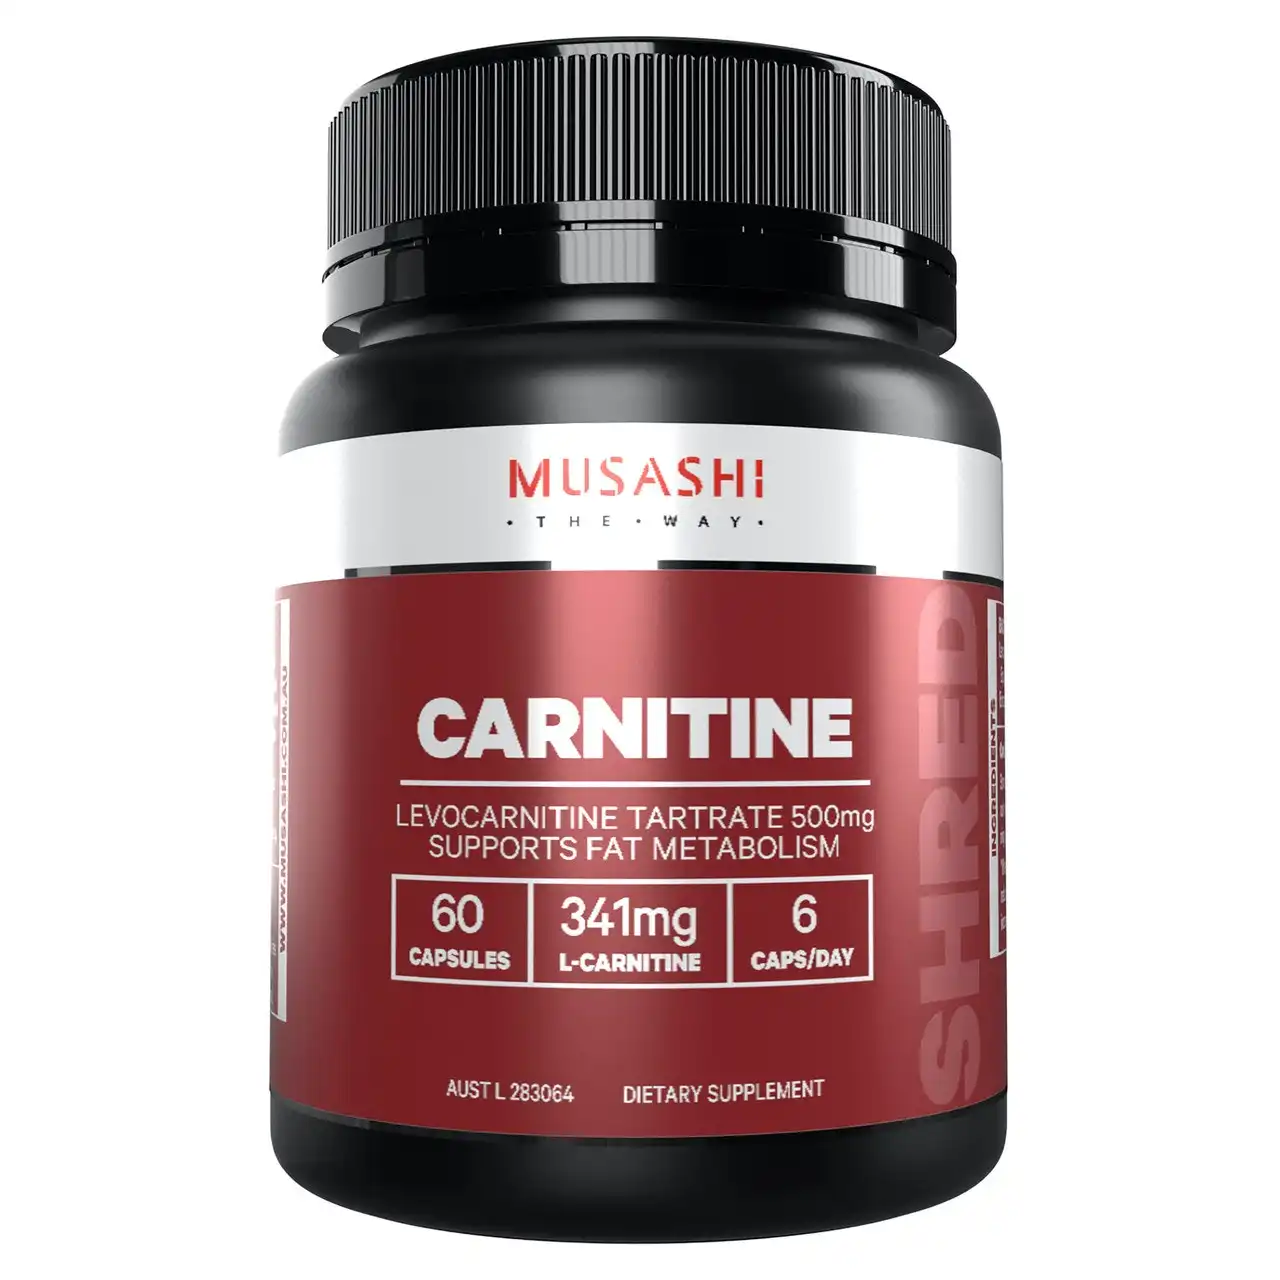 Musashi Carnitine 60 capsules